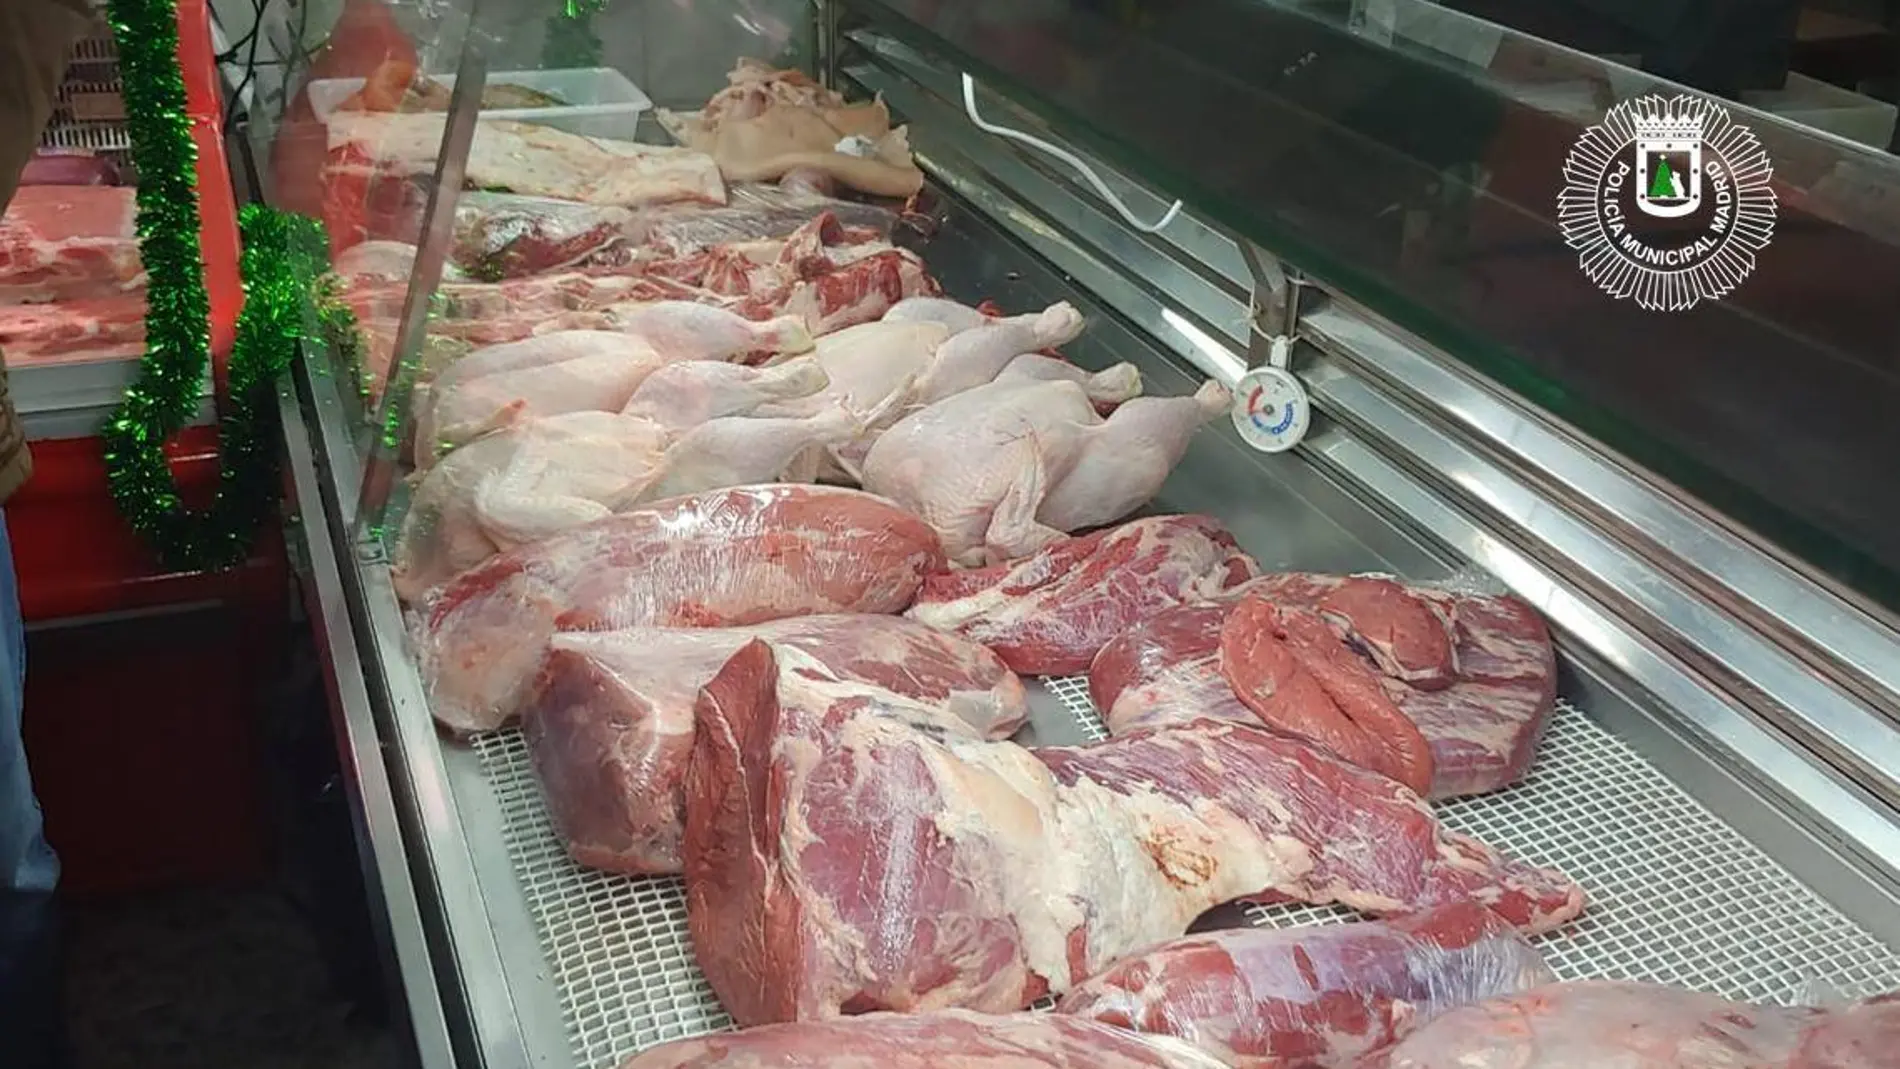 Imagen de las piezas de carne, ubicadas en un refrigerador que no funcionaba